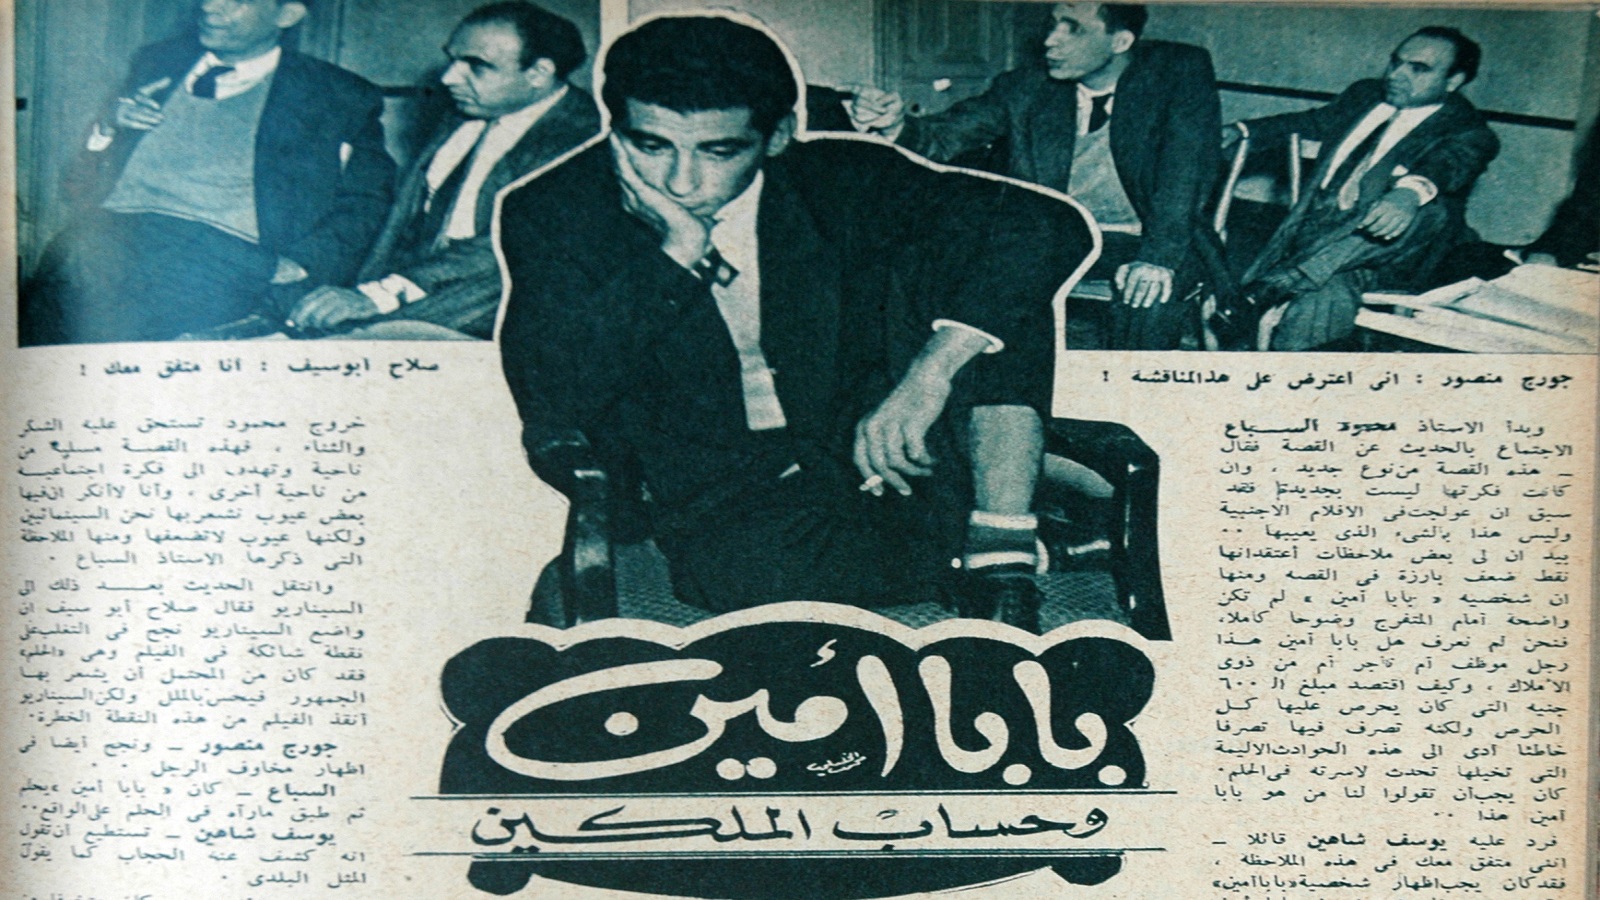  صلاح أبو سيف وجورج منصور في ندوة "بابا أمين"، 1950.